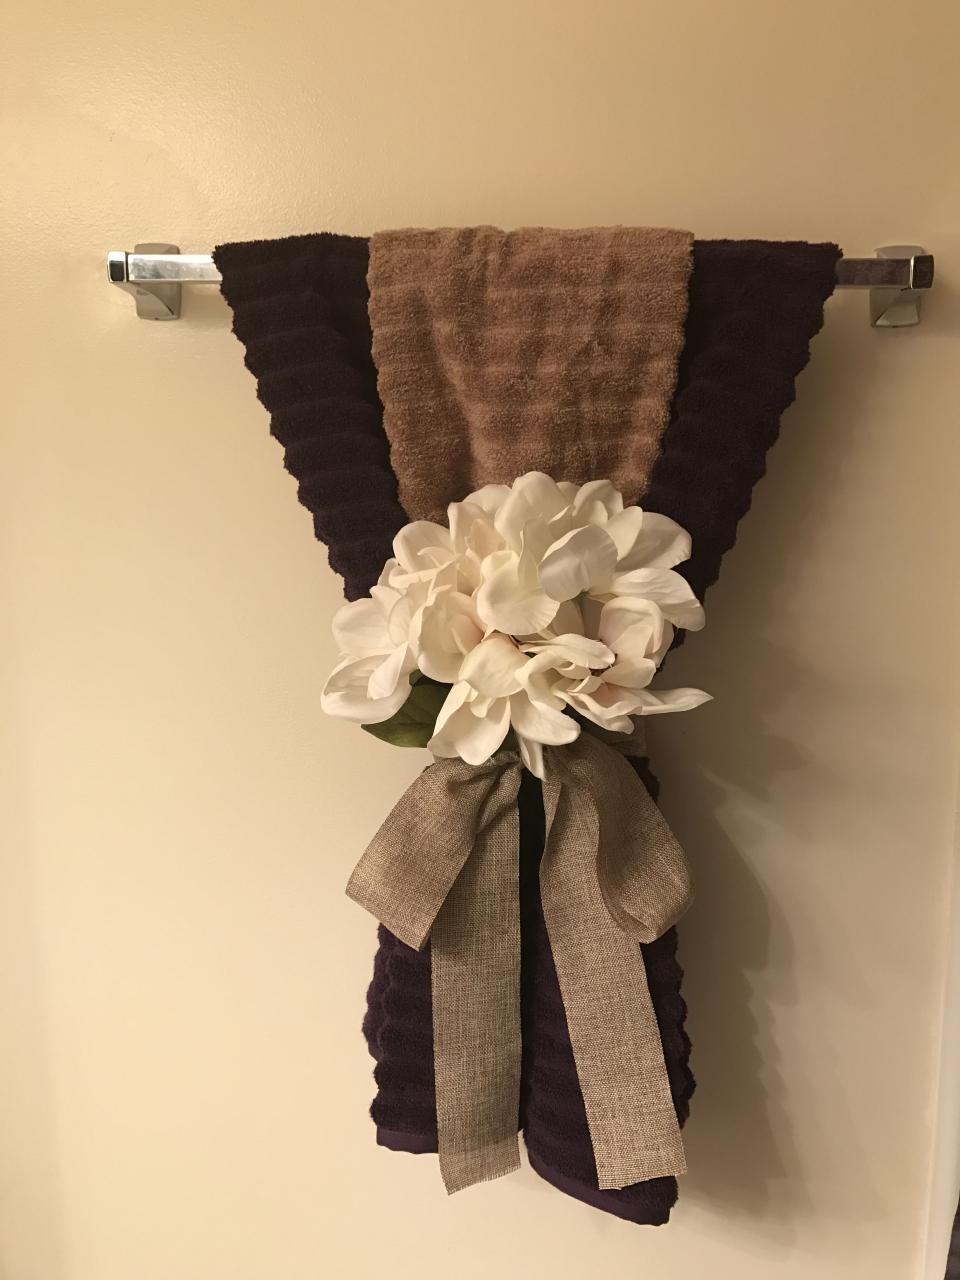 Bathroom towel decor Bathroom towel decor, Decorative towels, Towel decor